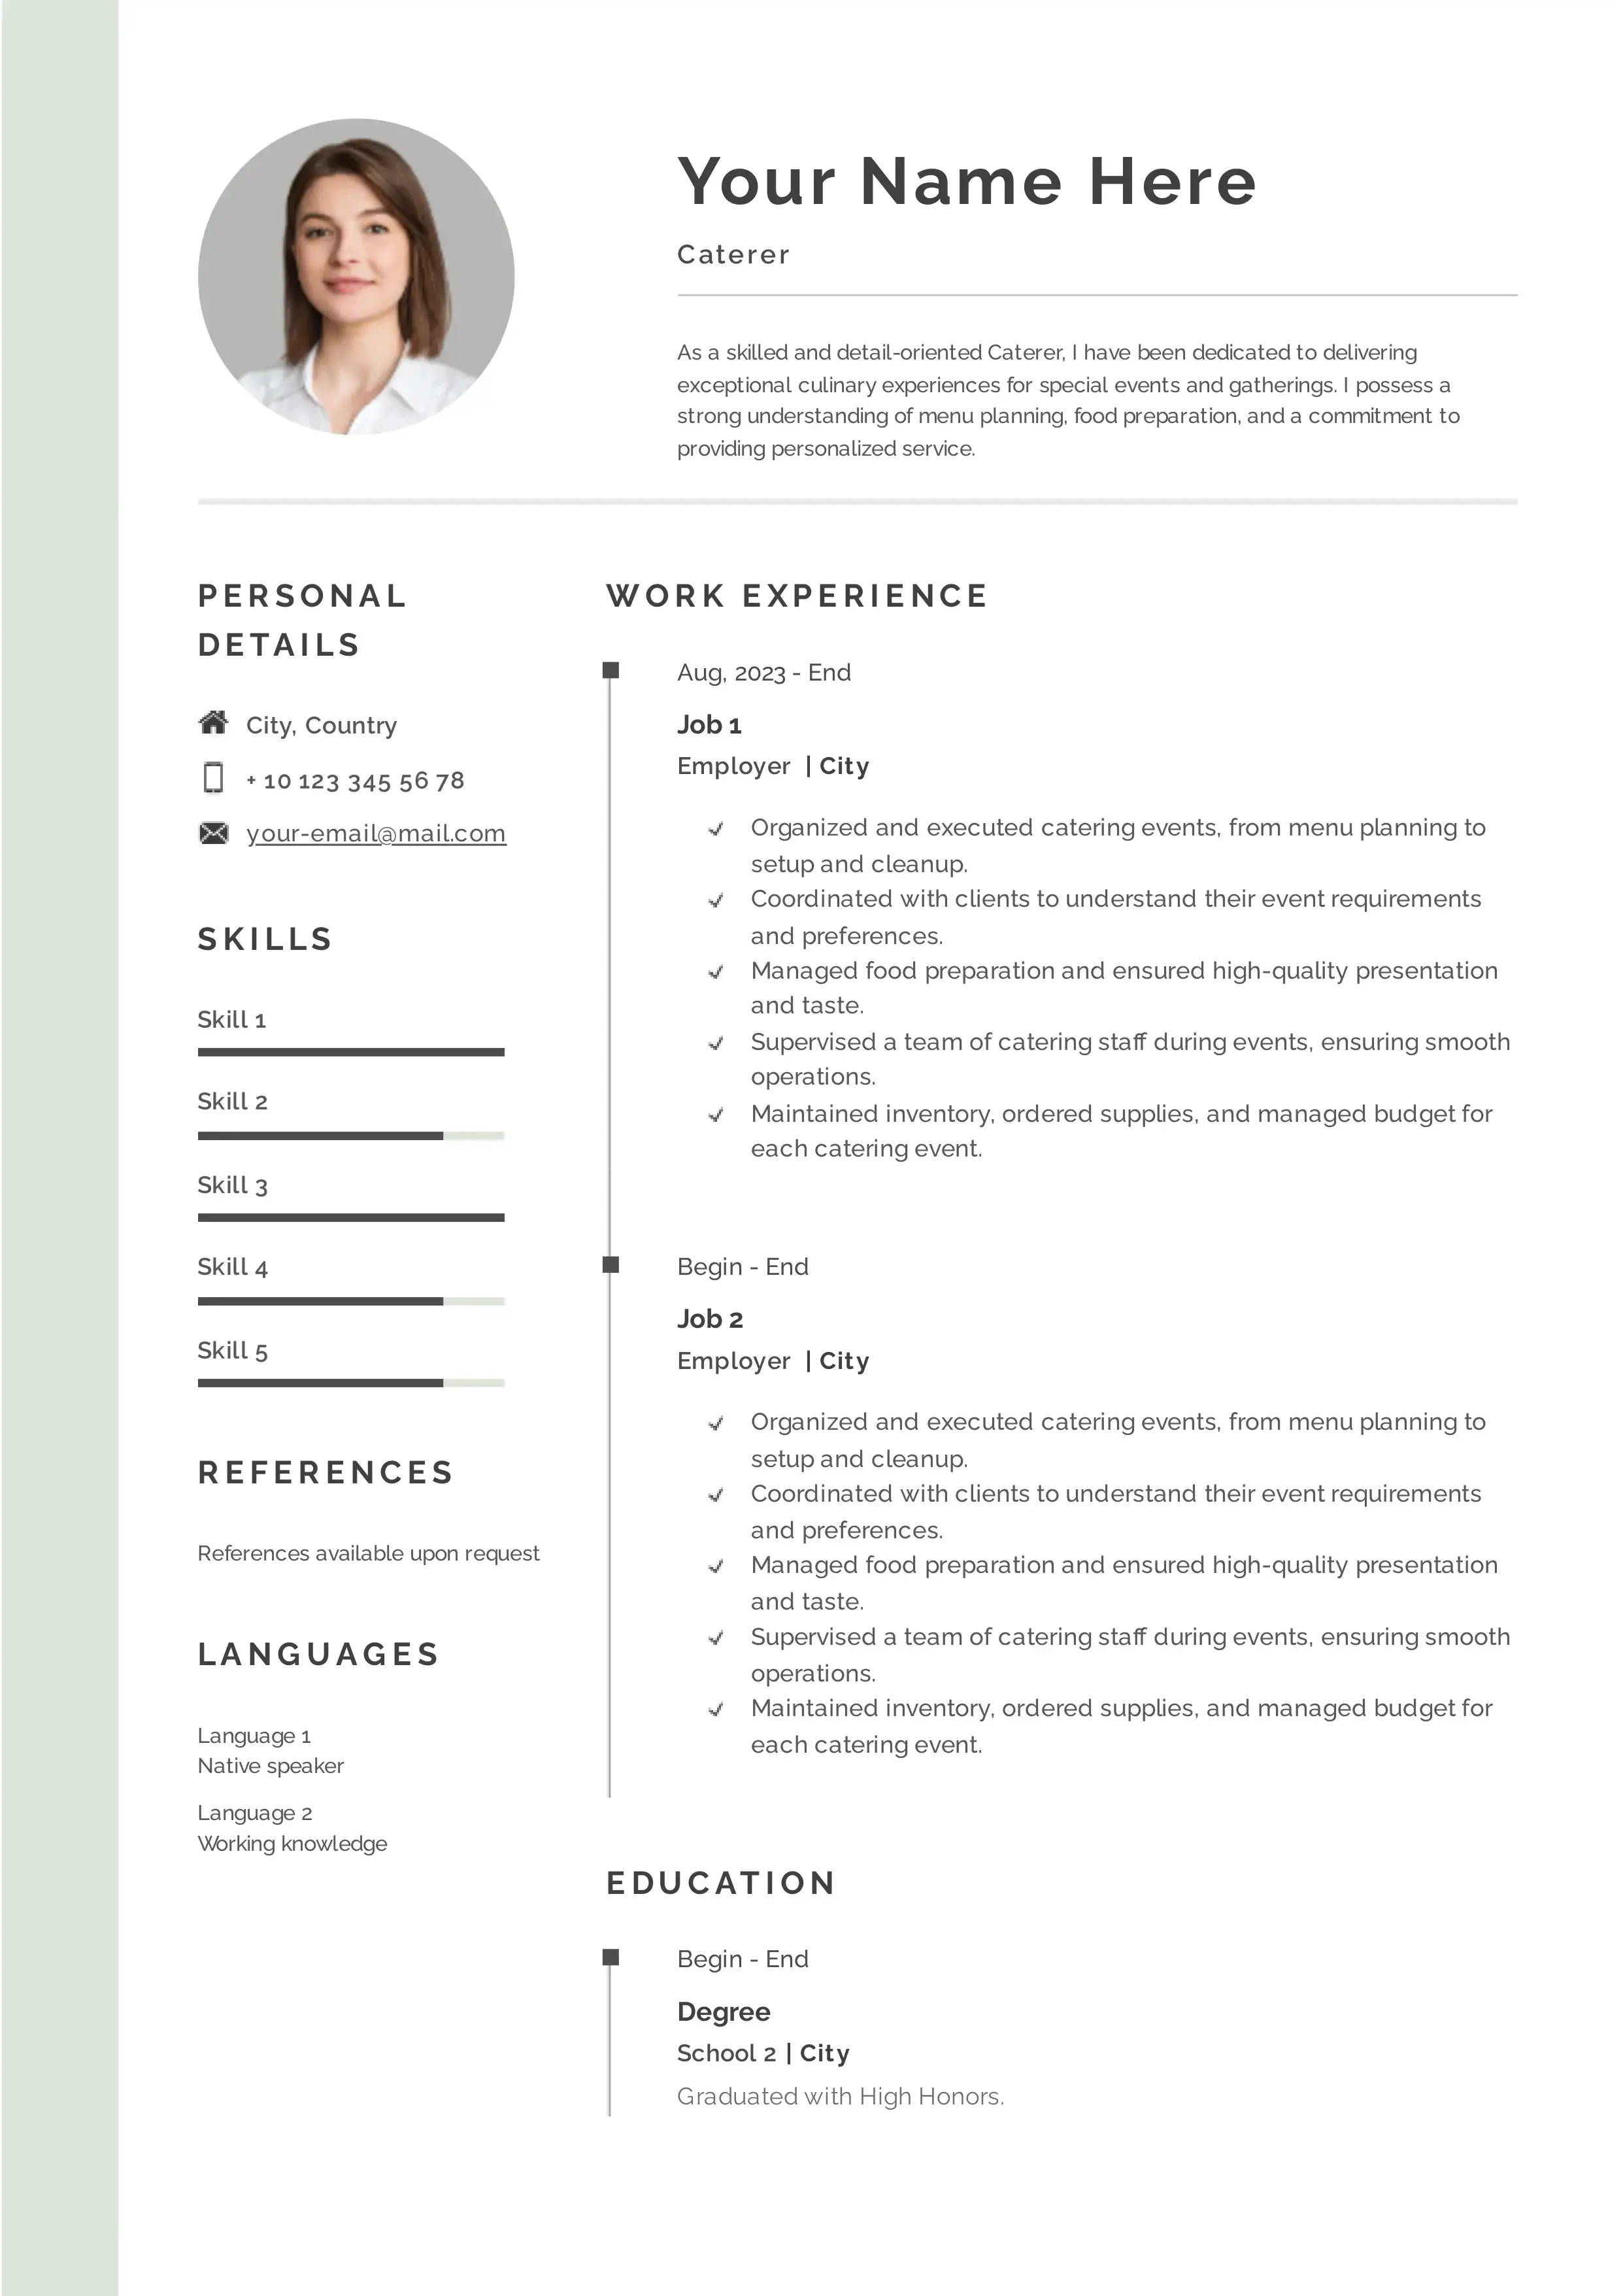 Caterer resume example CV